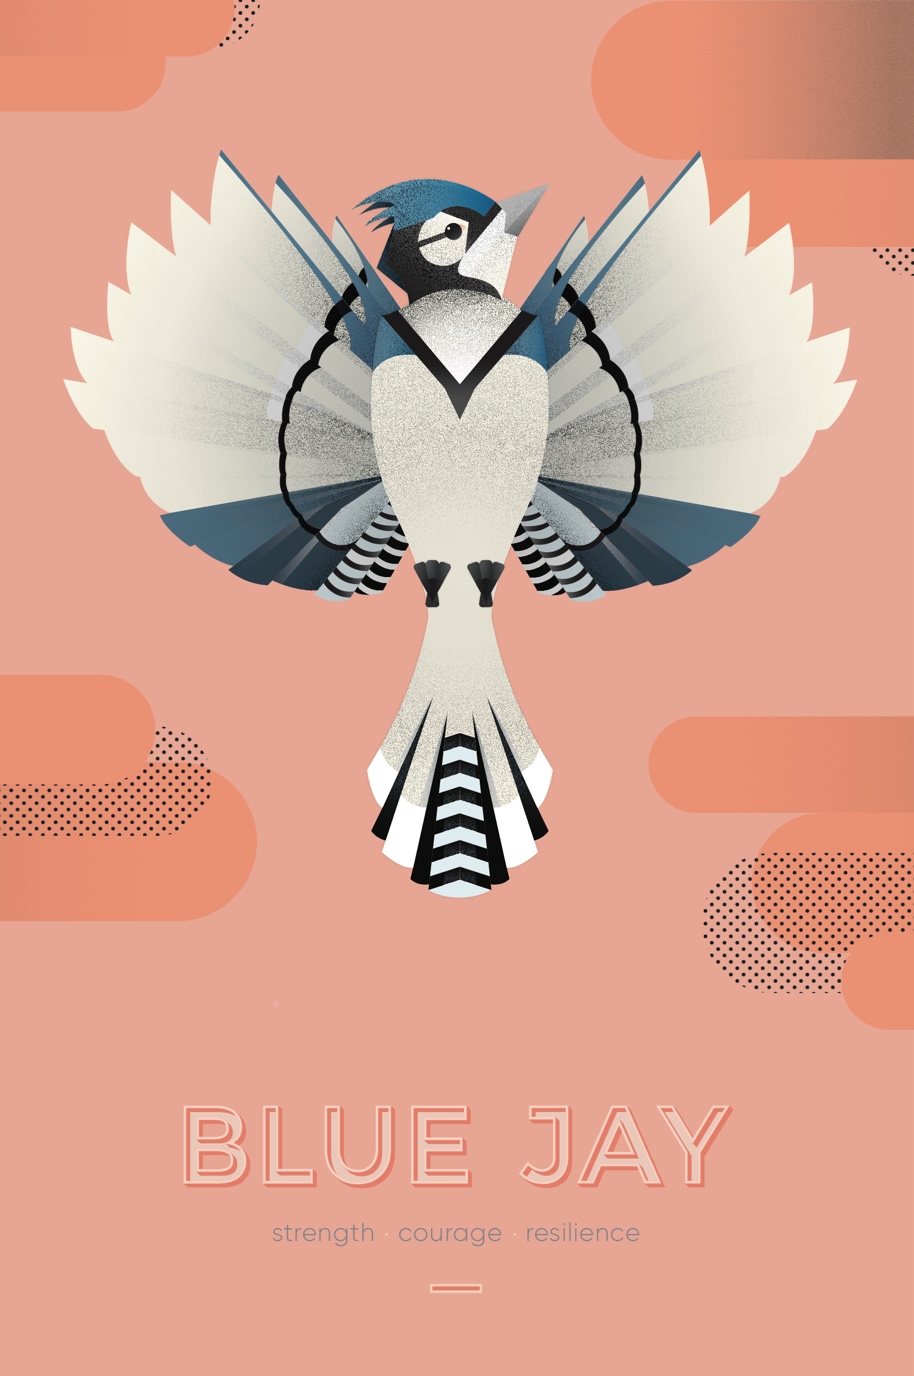 Miranda Fragomenis Poster of a Blue Jay